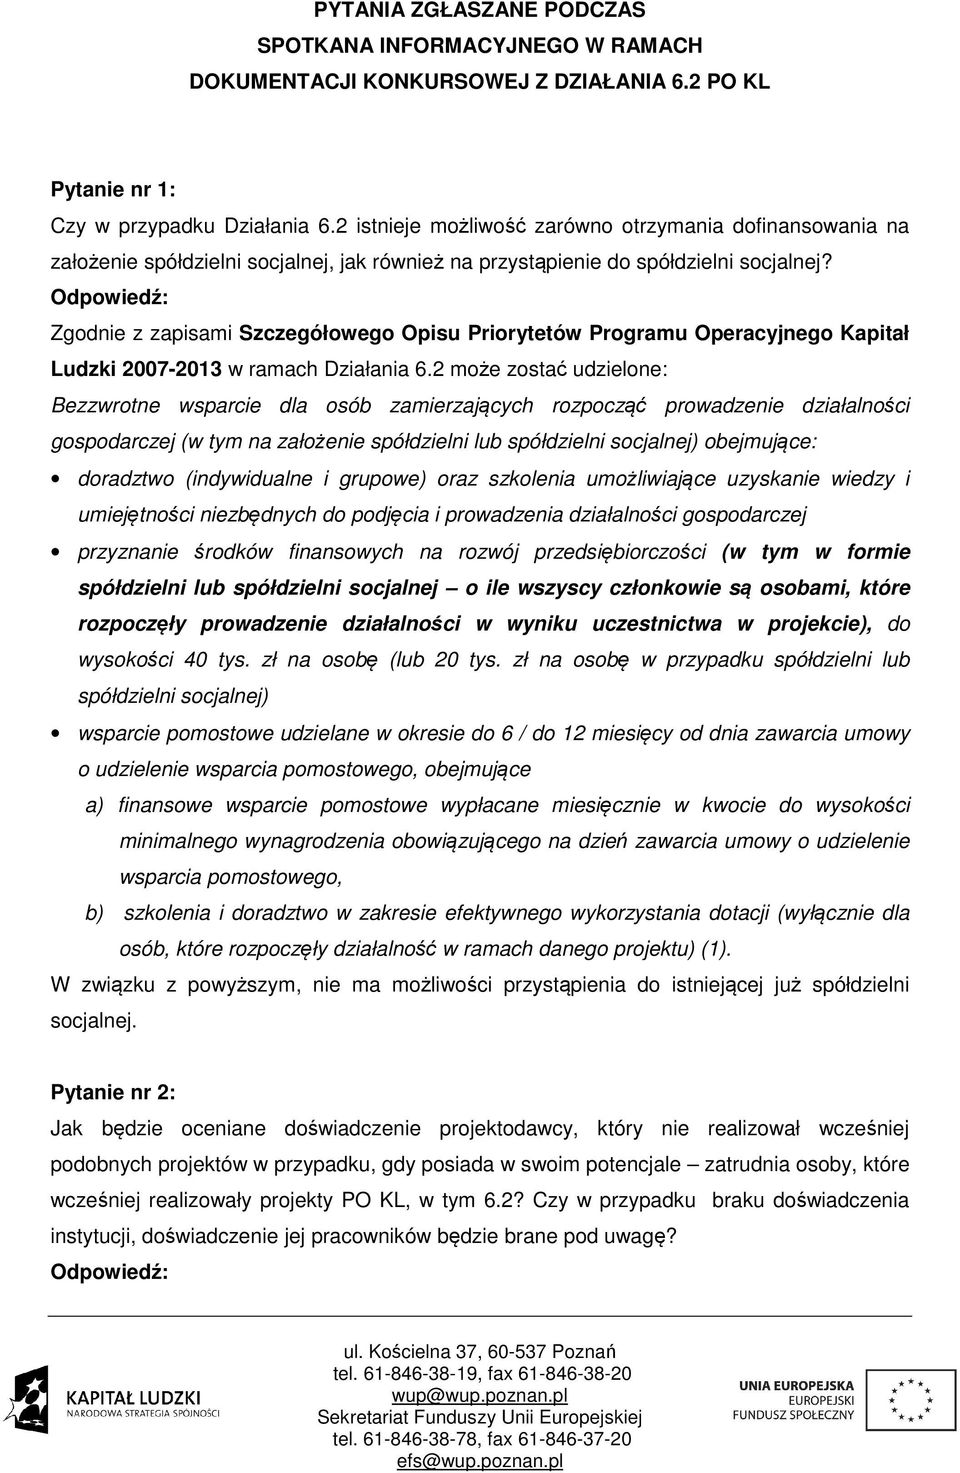 Zgodnie z zapisami Szczegółowego Opisu Priorytetów Programu Operacyjnego Kapitał Ludzki 2007-2013 w ramach Działania 6.